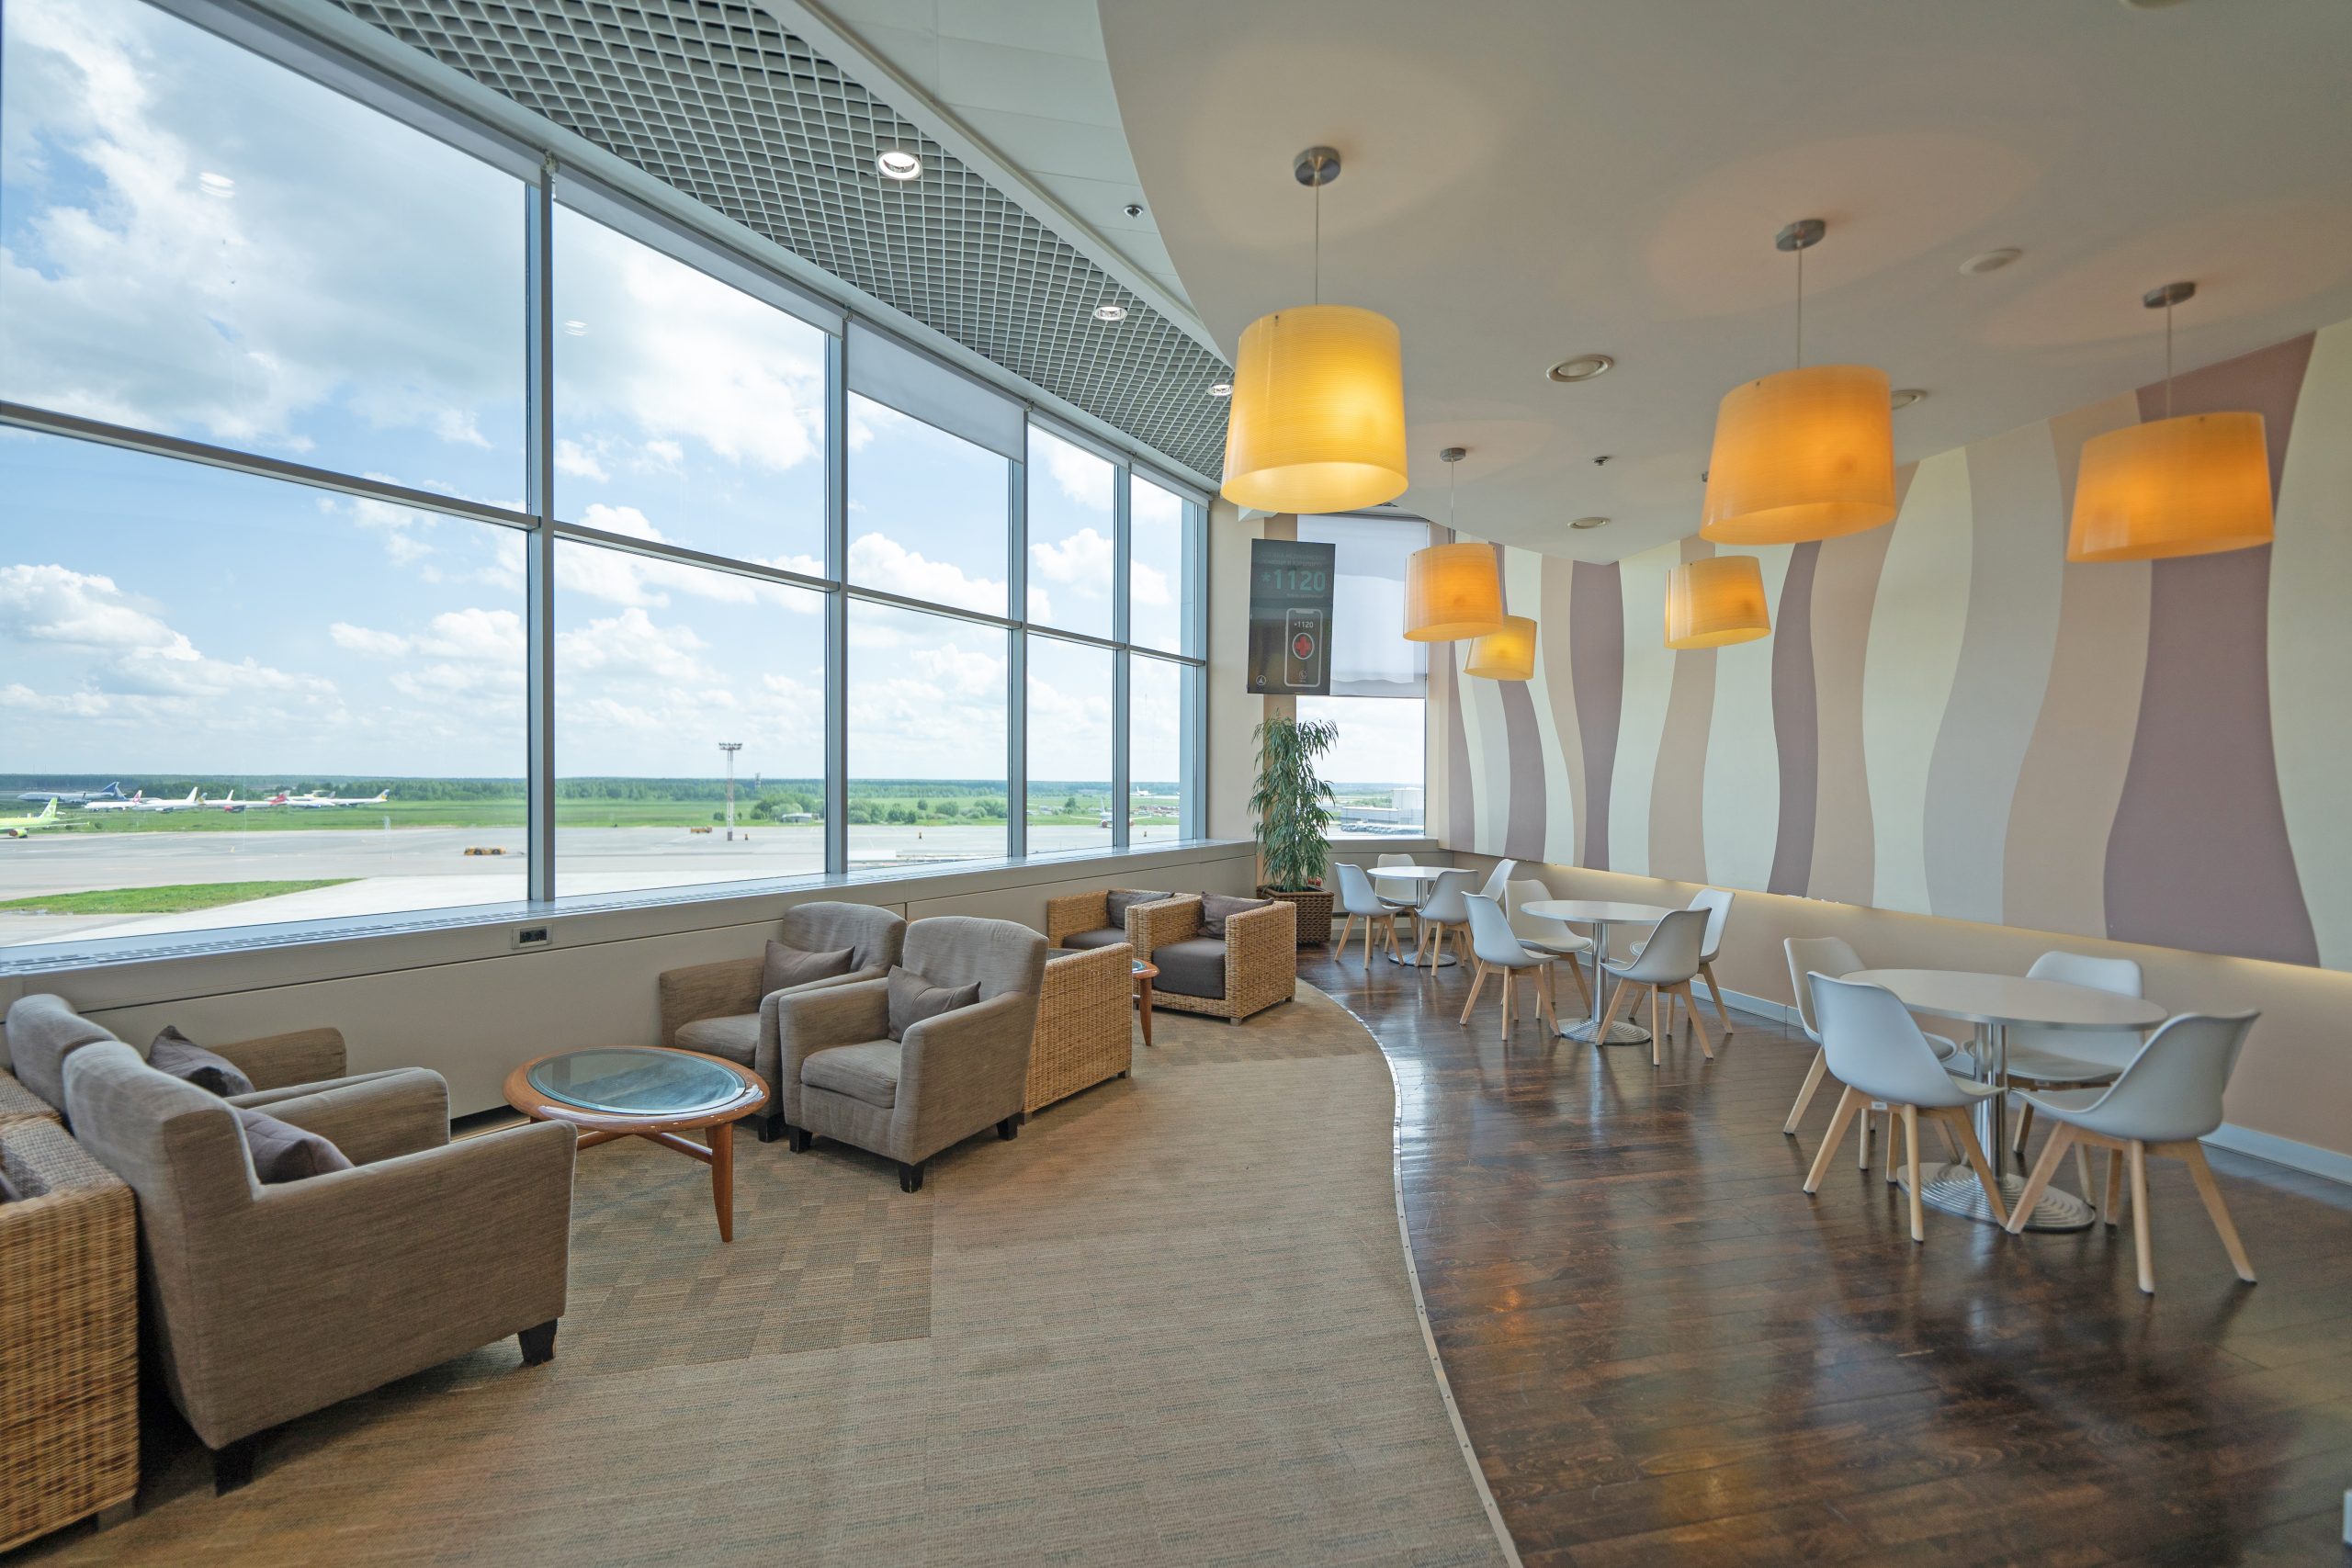 Бизнес-зал для провожающих открылся в московском аэропорту Домодедово